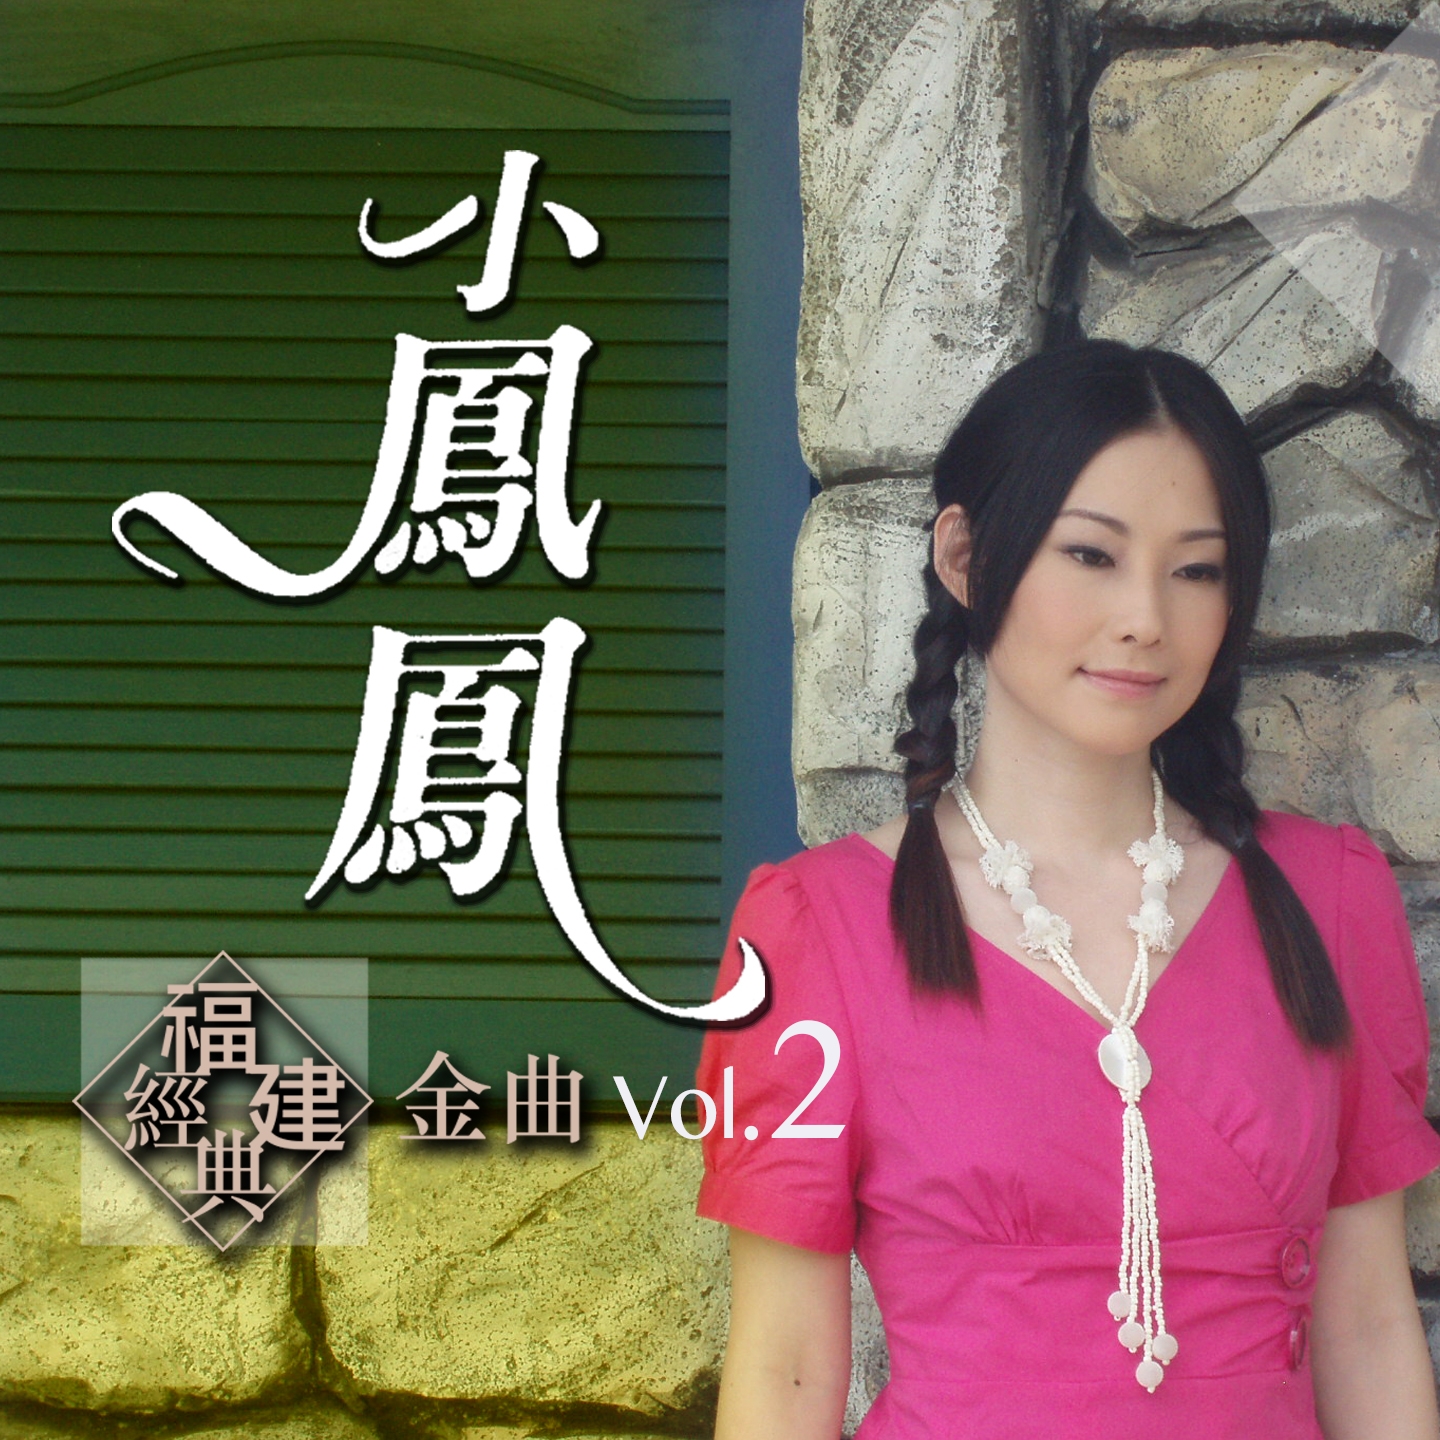 xiao feng feng fu jian jing dian jin qu, Vol. 2